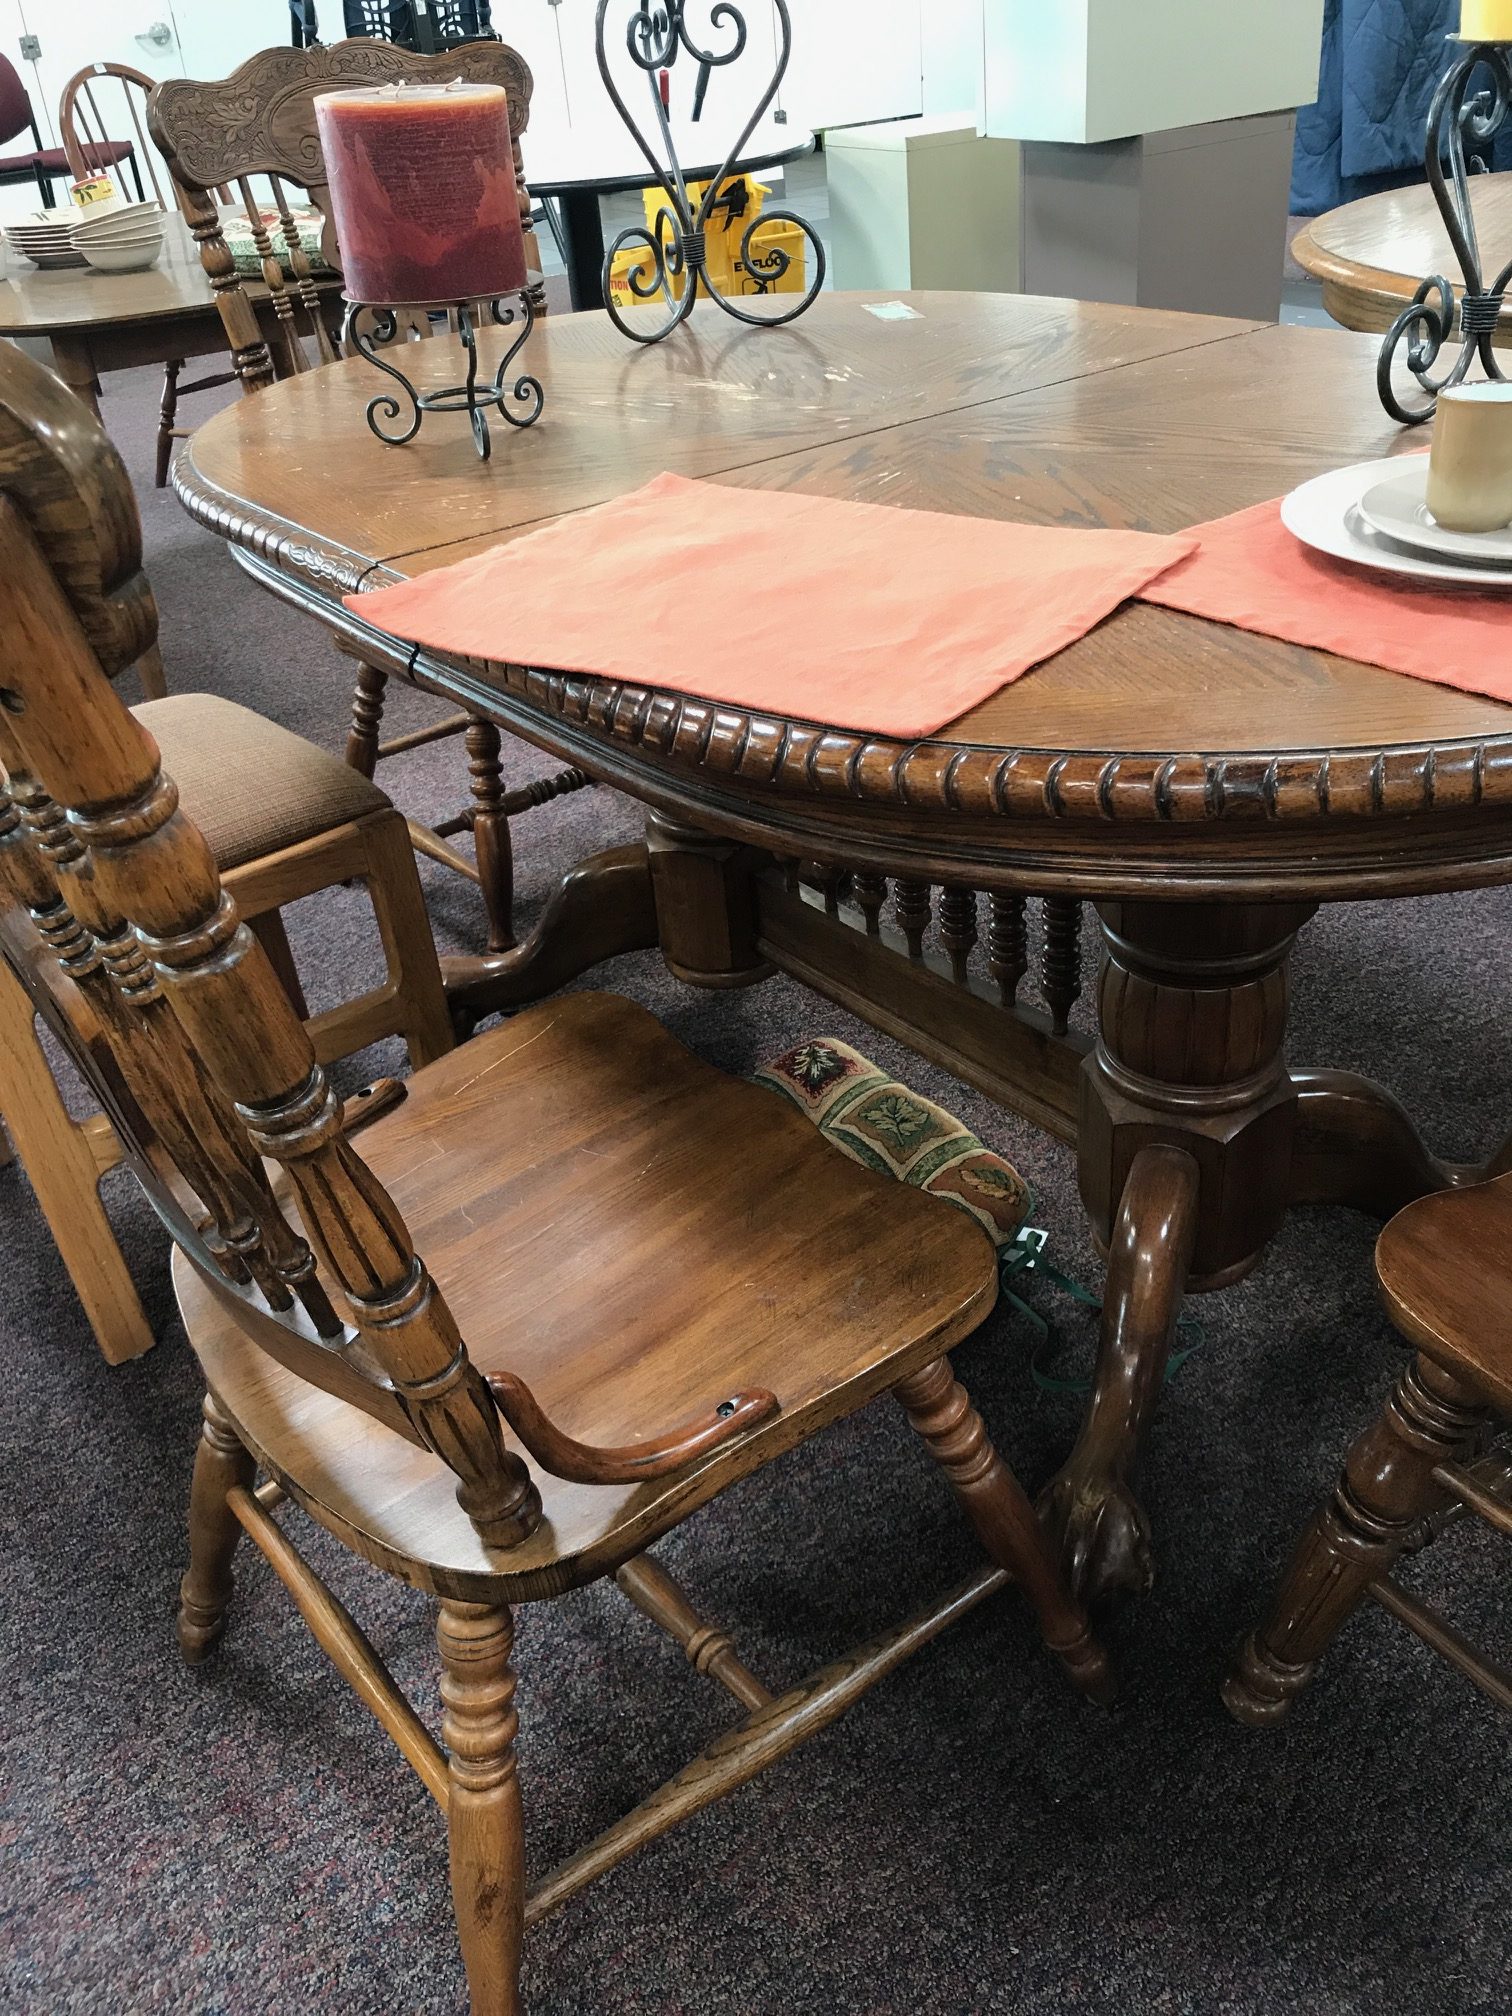 Vintage Wood Table